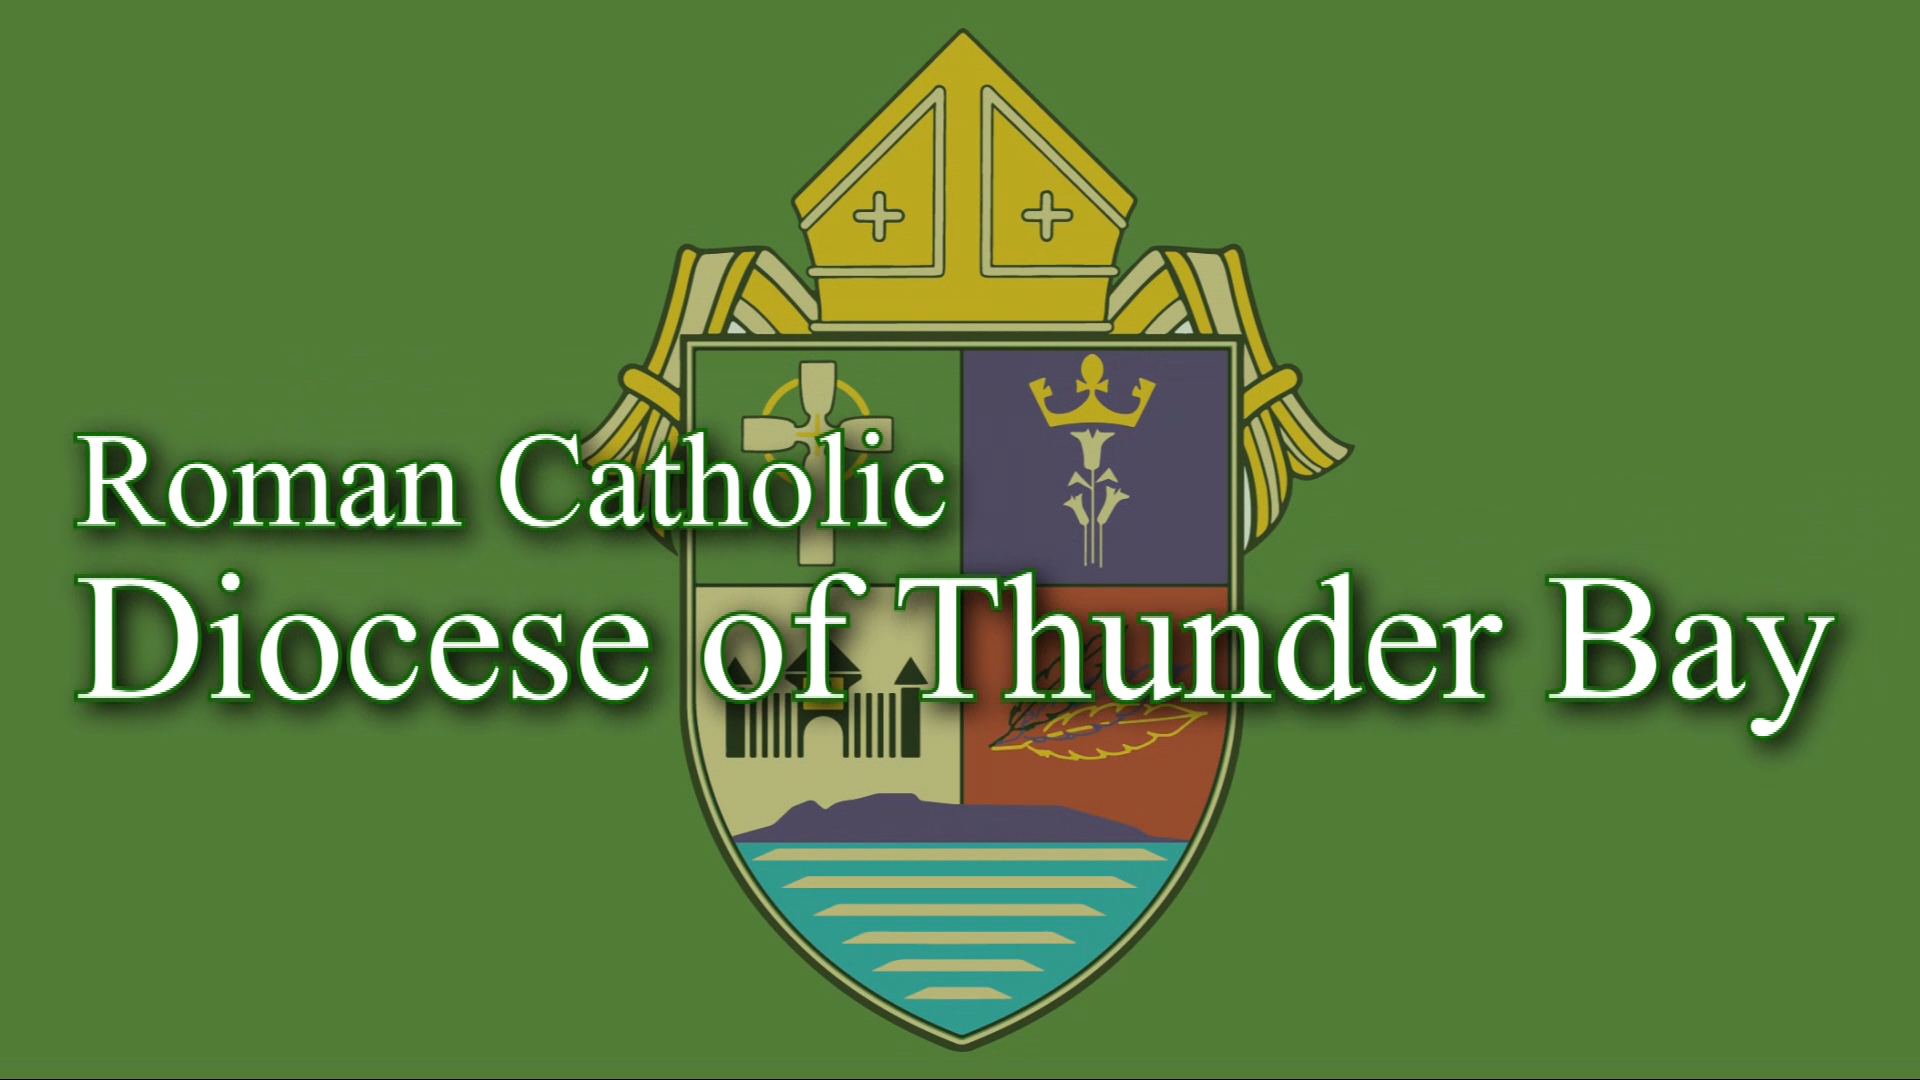 Roman Catholic Diocese of Thunder Bay